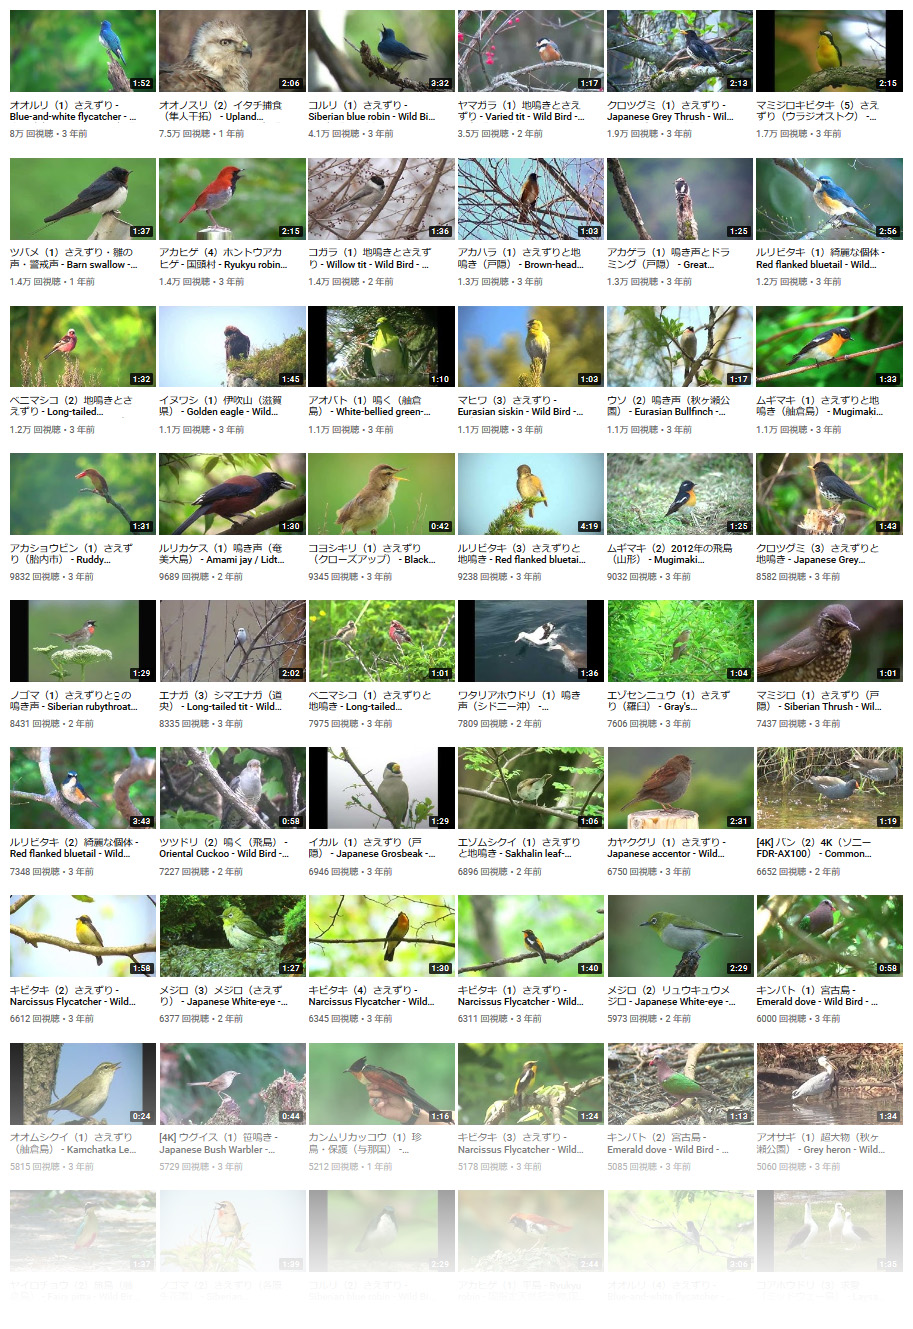 野鳥動画図鑑』YouTube公開済み野鳥数がいよいよ大台の「600種類」を超えました！動画と鳴き声で愉しむ日本の野鳥図鑑は千本超の映像が引き続き見放題です⌒('Θ')⌒  | YujiKudo.com